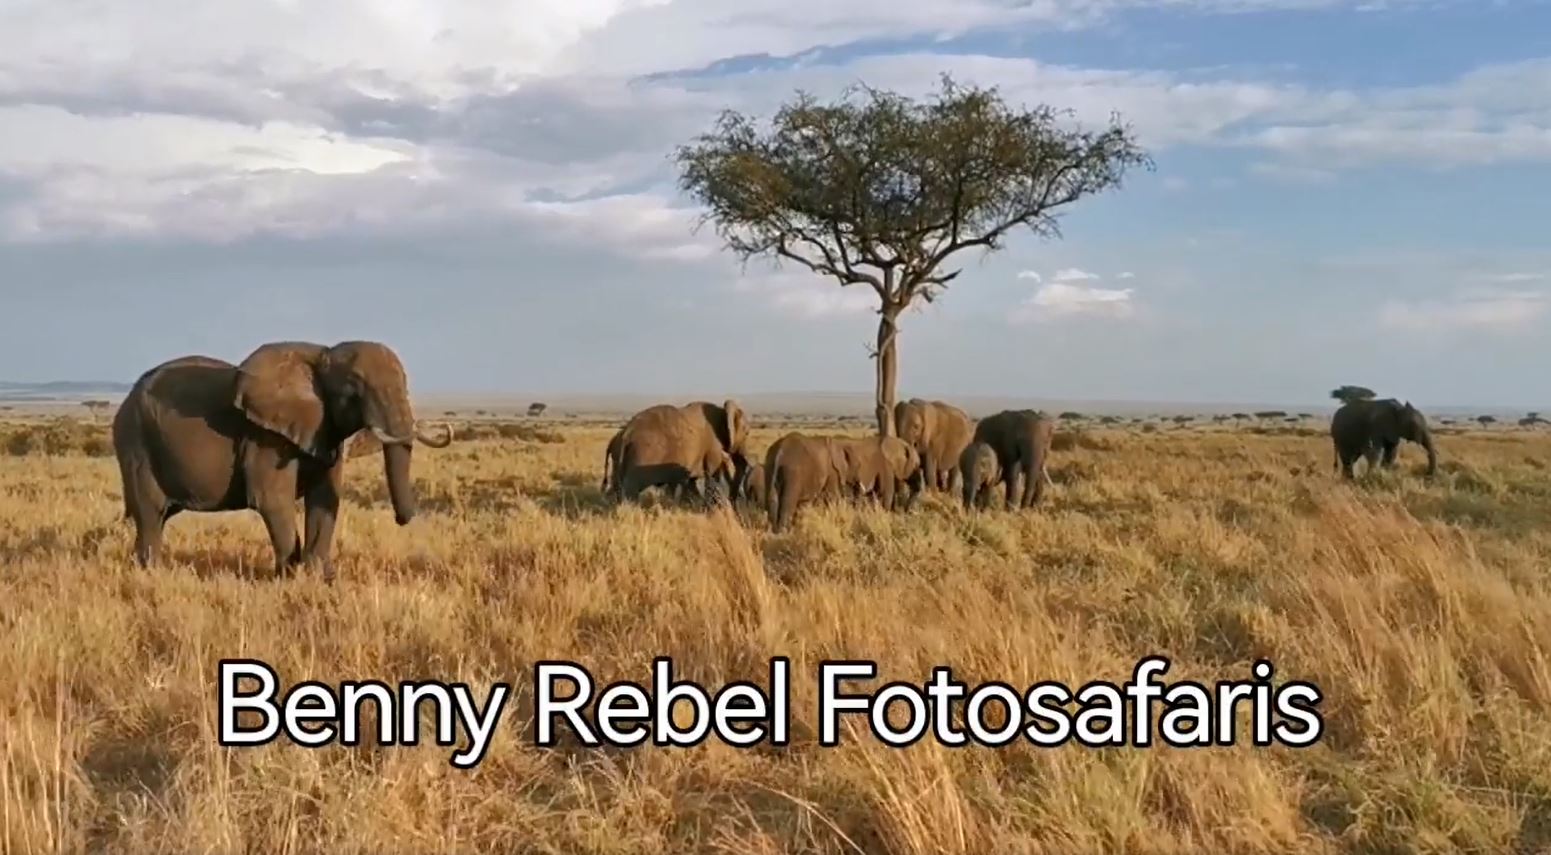 Fotoreise mit Benny Rebel Fotosafaris GmbH aus Hannover. Fotoreise durch die Wildnis Kenias. Fotografieren von Elefanten.